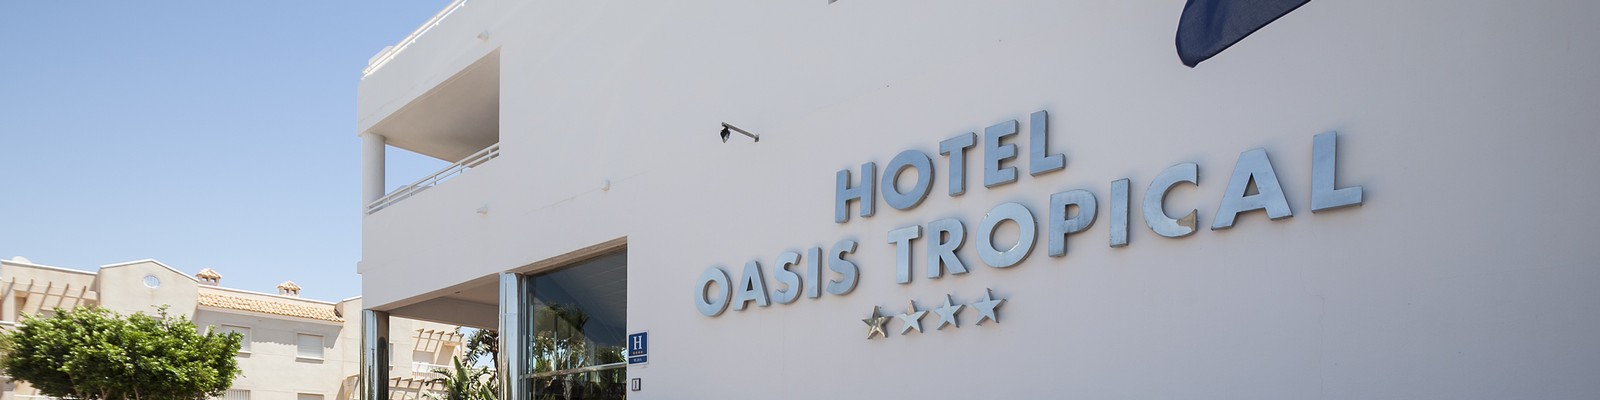 Oferta Hotel Best Oasis Tropical en Mojácar con descuento para verano 2023 y anulación gratis (Mojacar - ALMERIA)